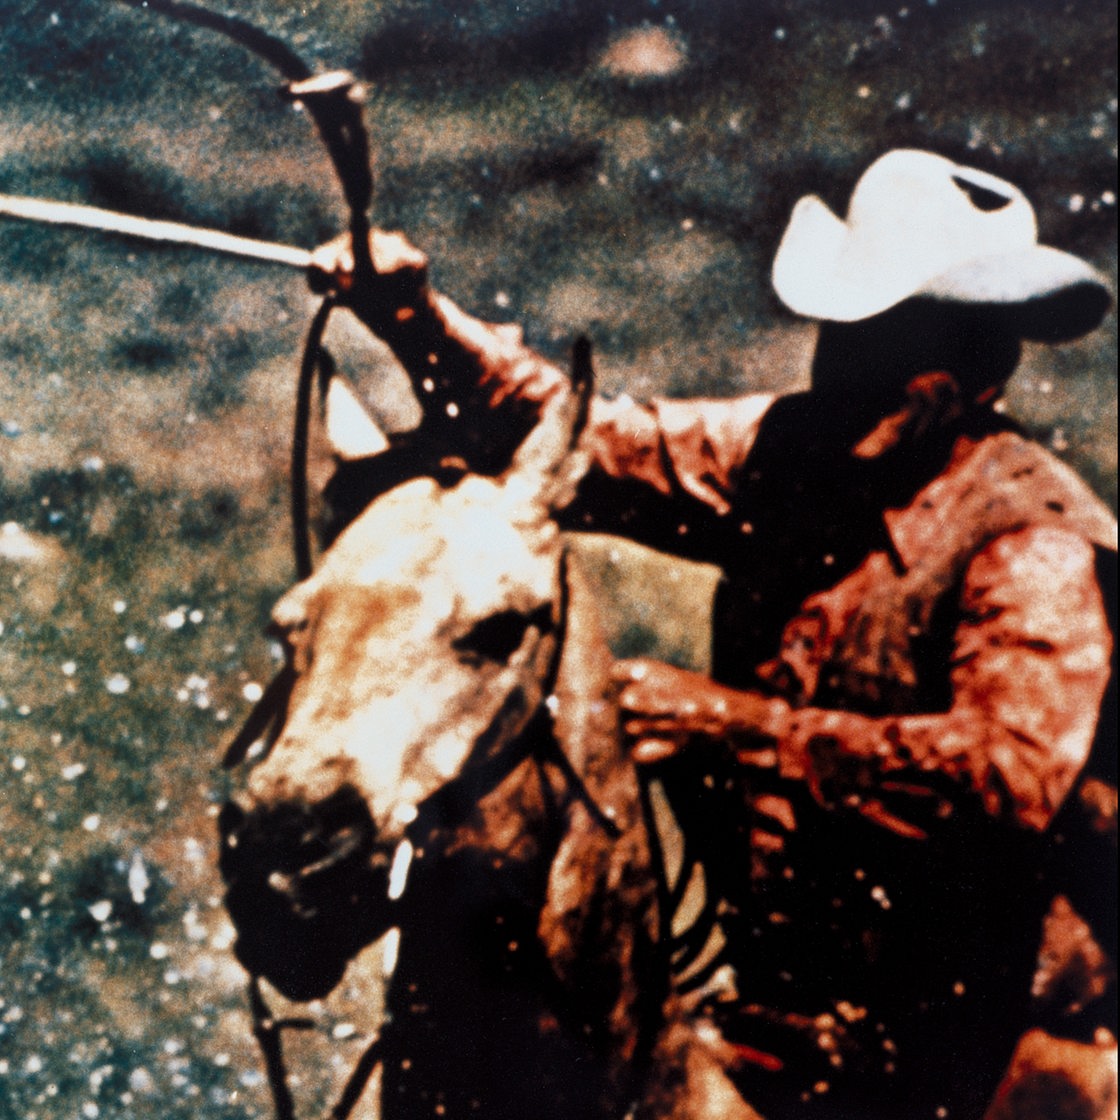 Alte Fotografie eines Cowboys - Kunstwerk von Richard Prince